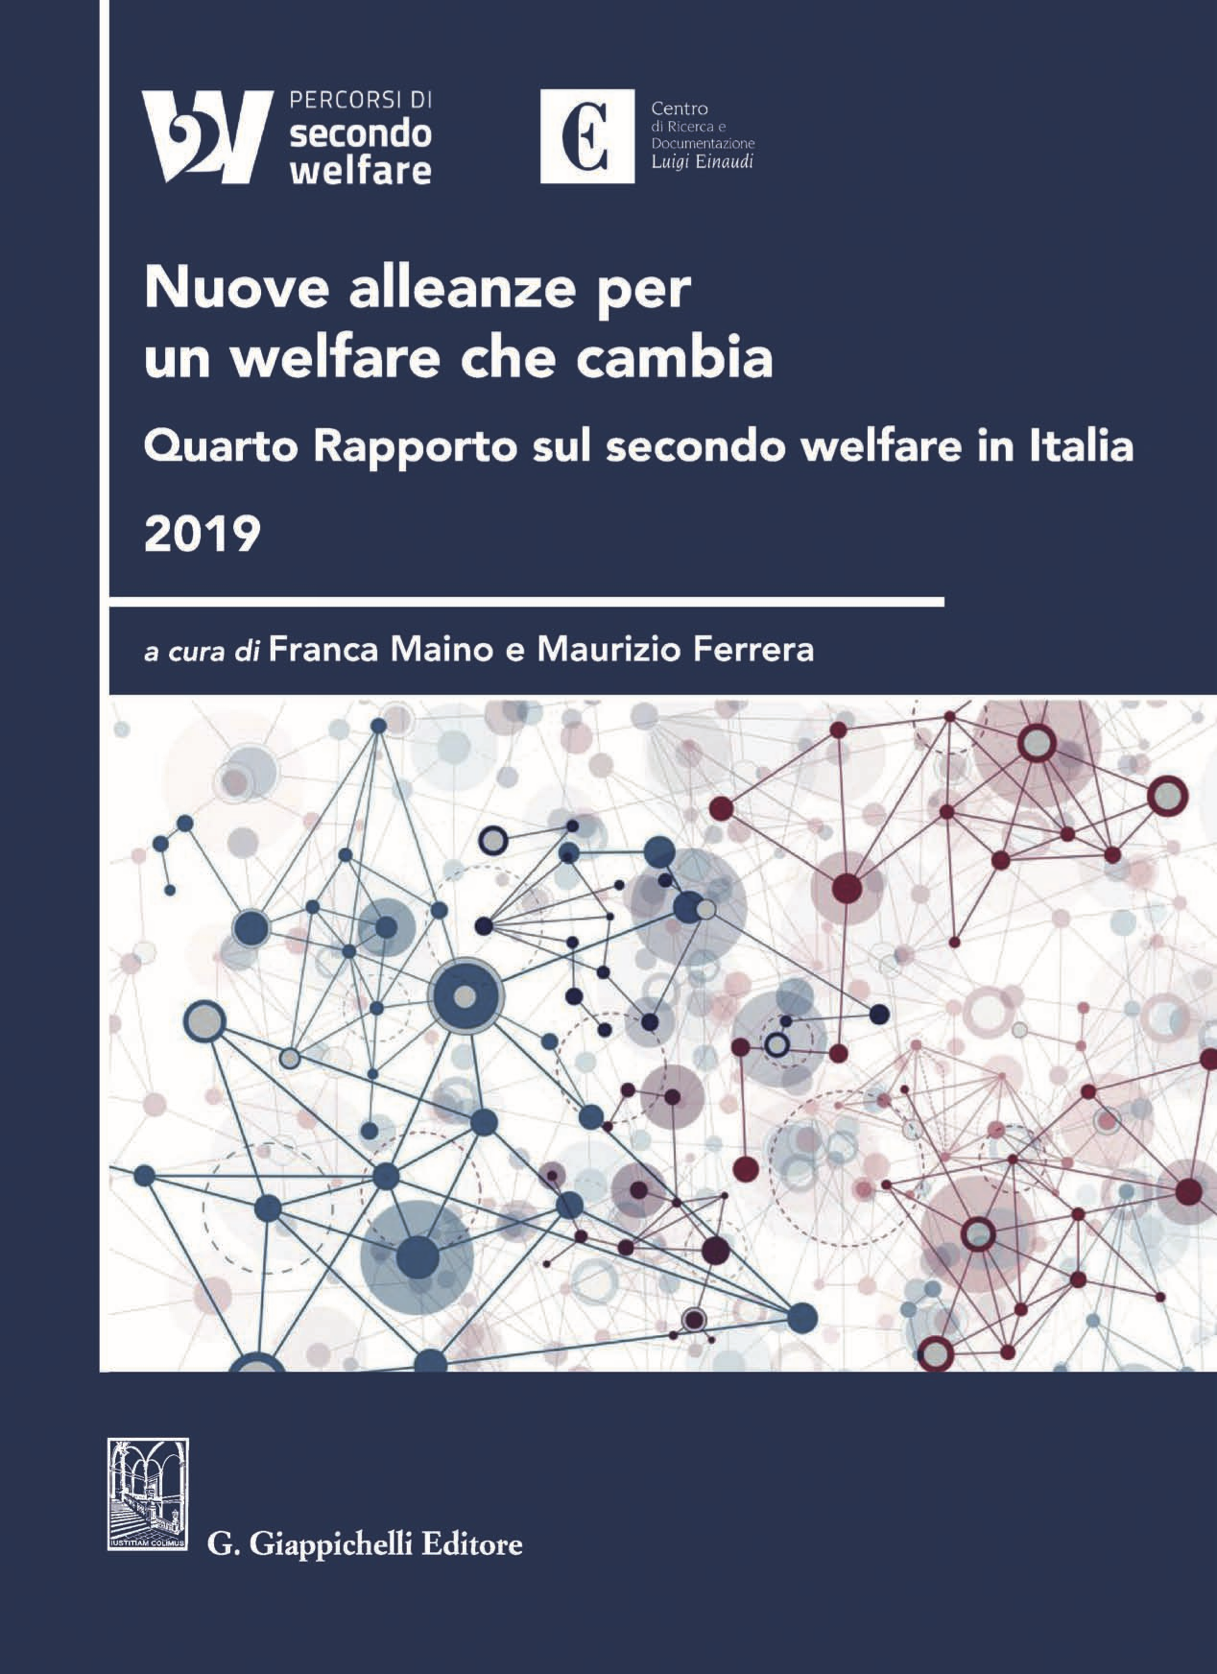 Quarto Rapporto sul secondo welfare in Italia 2019